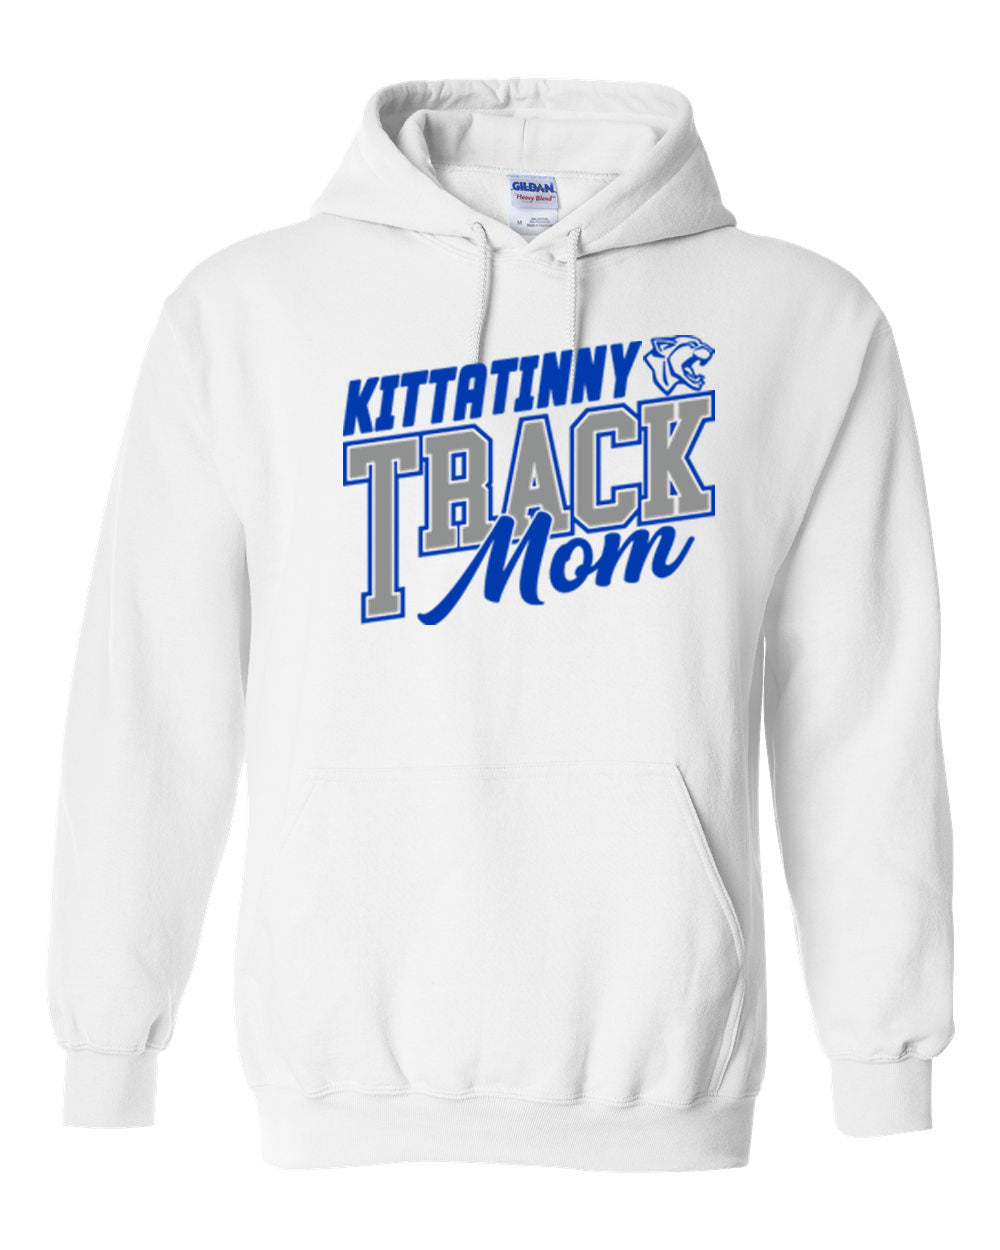 Kittatinny Track Design 4 Hooded Sweatshirt